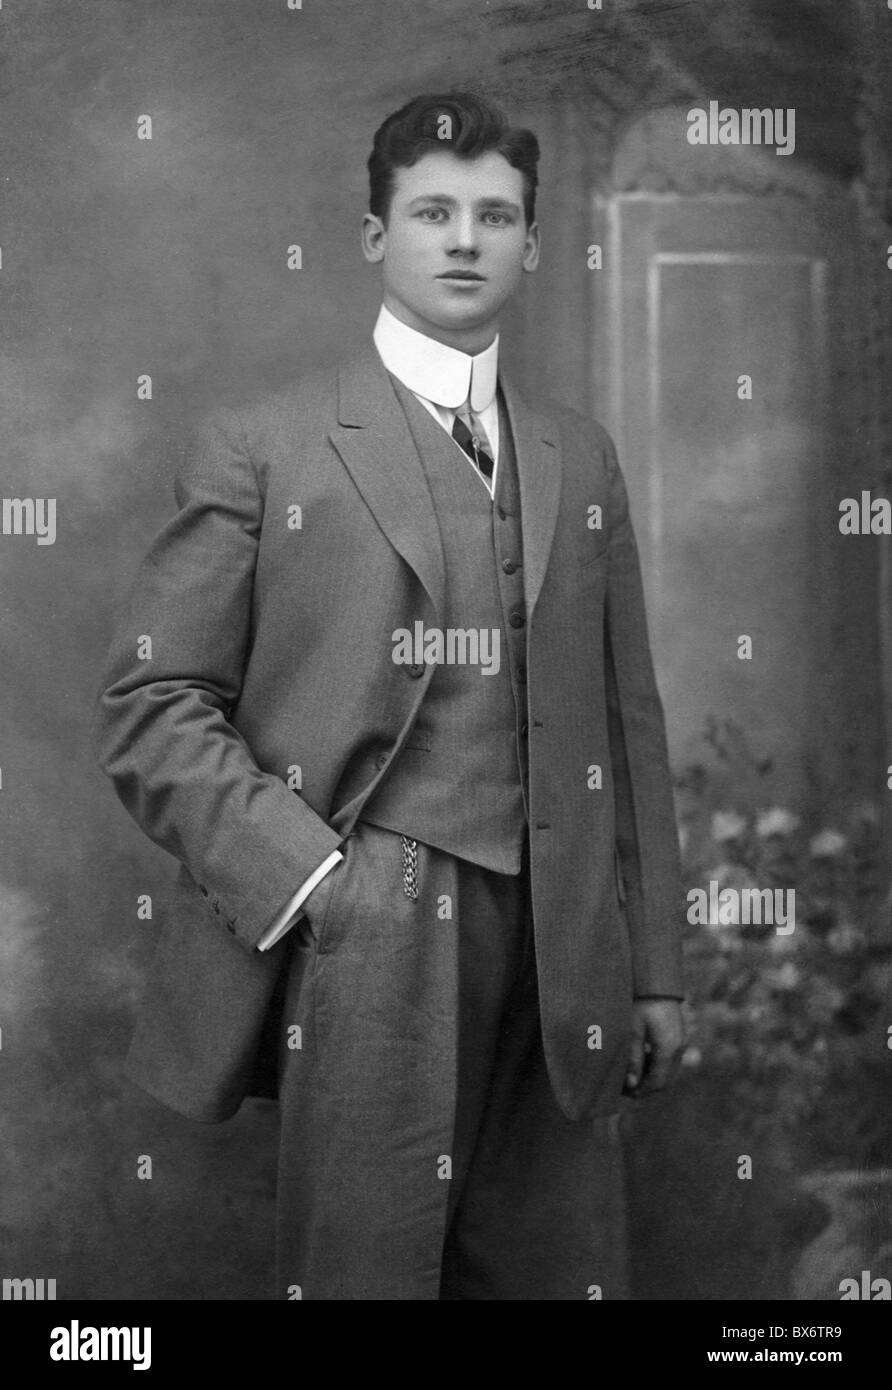 1930s mens suits